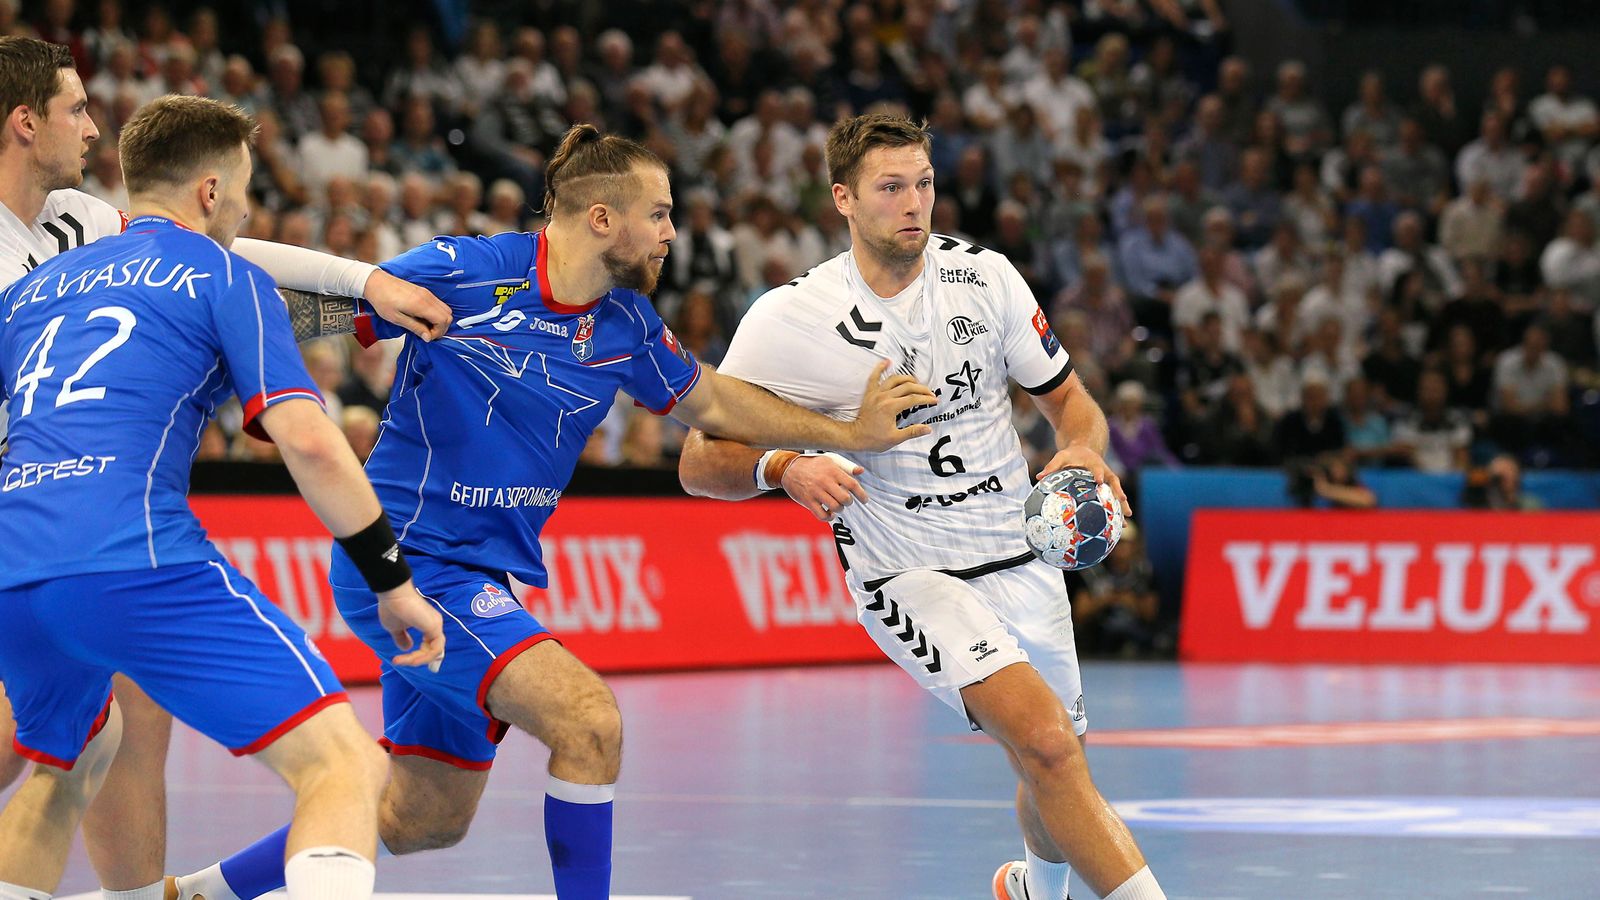 Erster gegen Zweiter THW Kiel trifft in der Champions League auf Montpellier HB Handball News Sky Sport